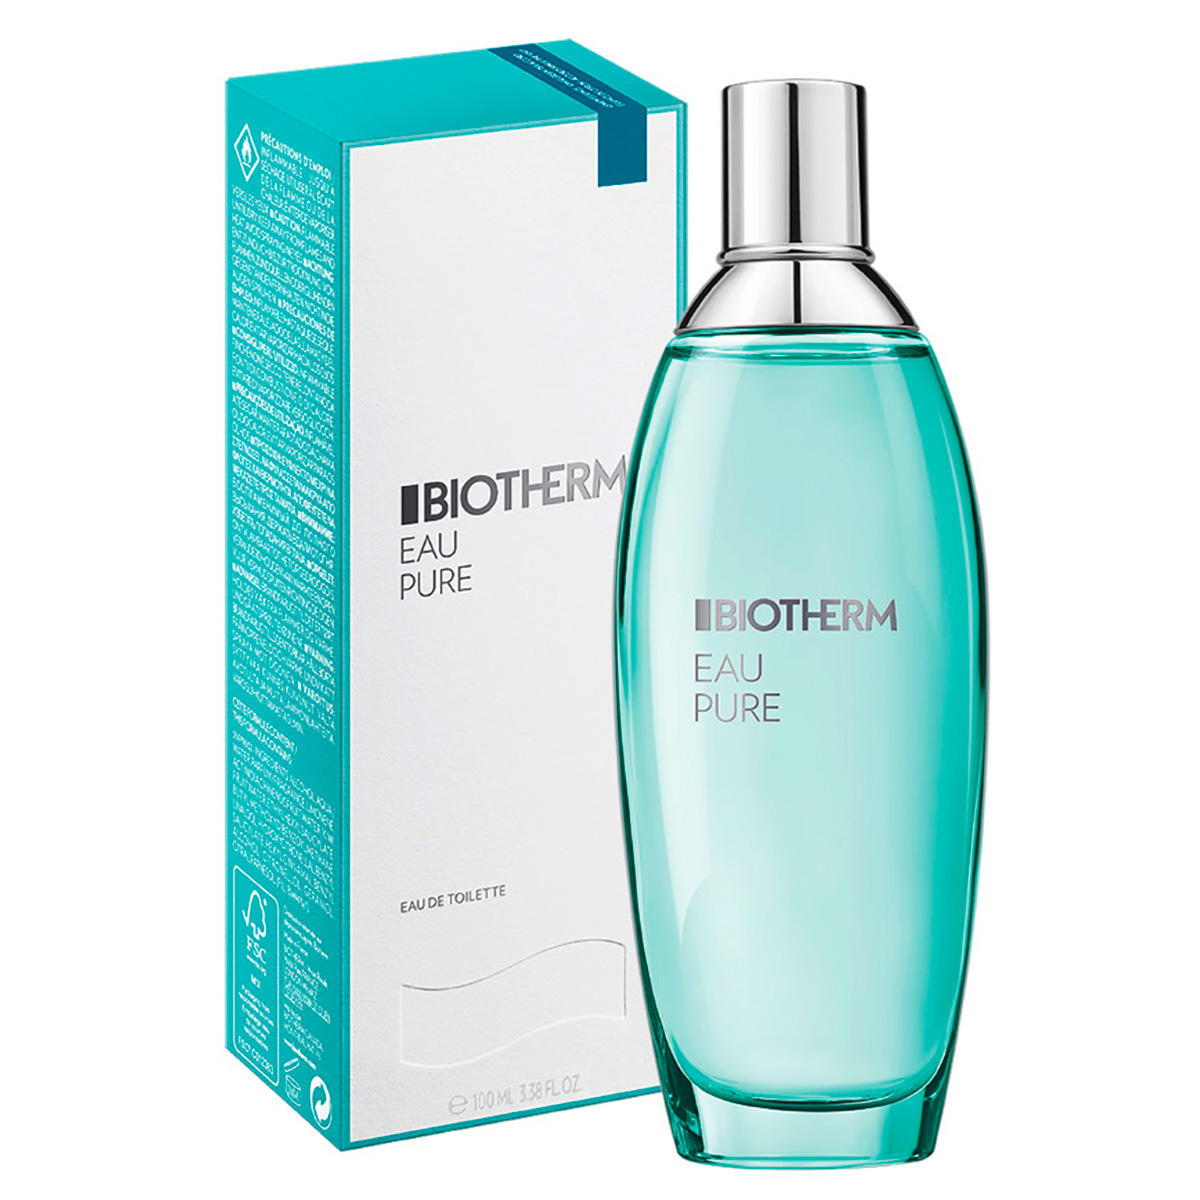 Biotherm Eau Parfum corporel pur 100 ml - 1